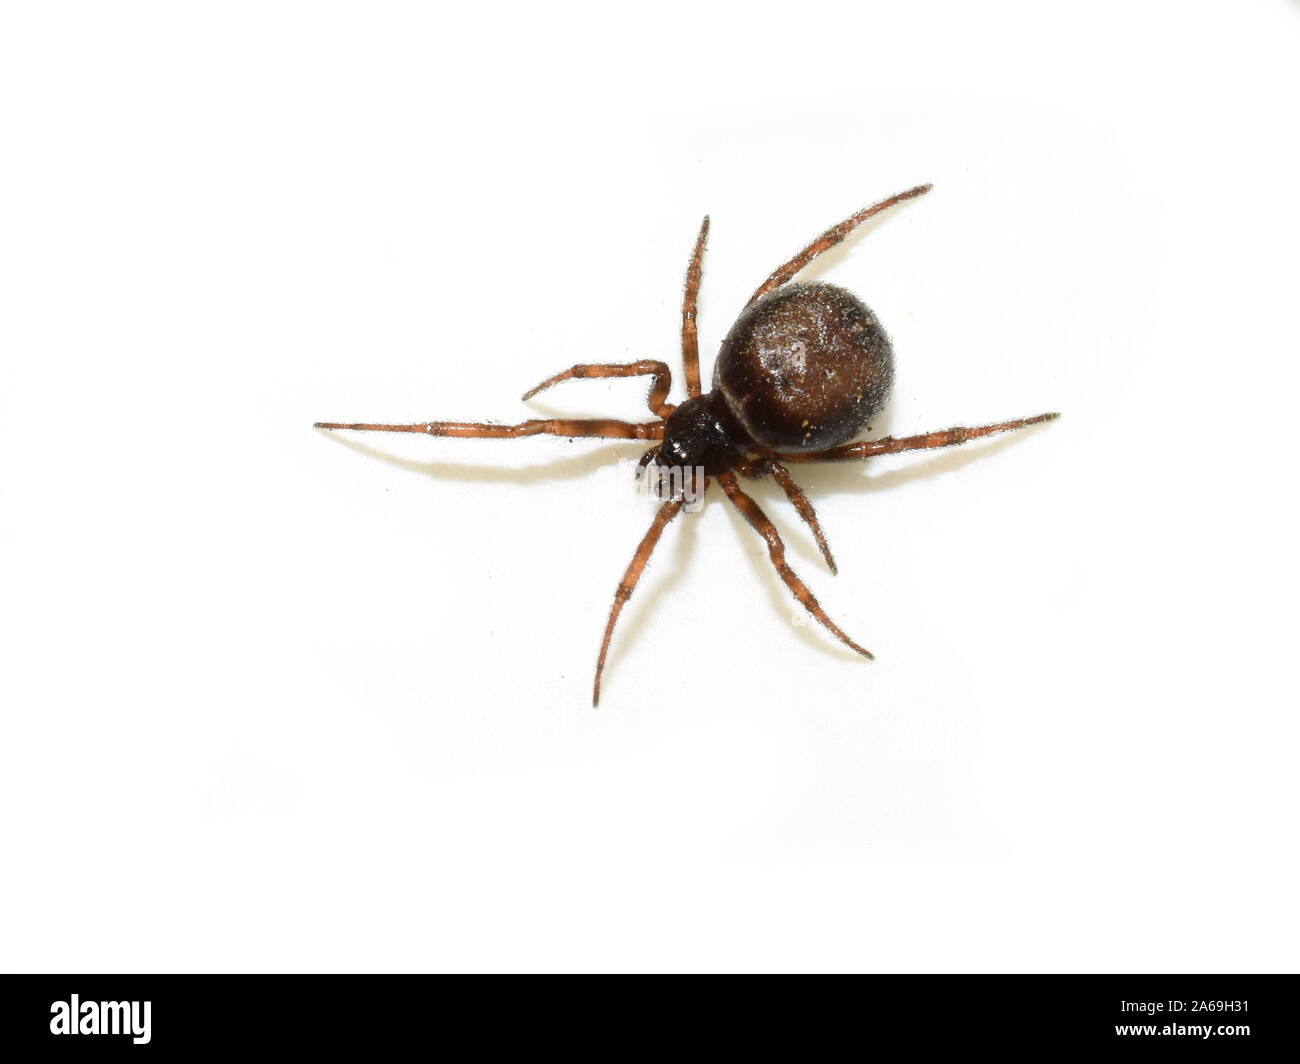 Hutch coniglio Spider Steatoda bipunctata brown spider isolati su sfondo bianco Foto Stock